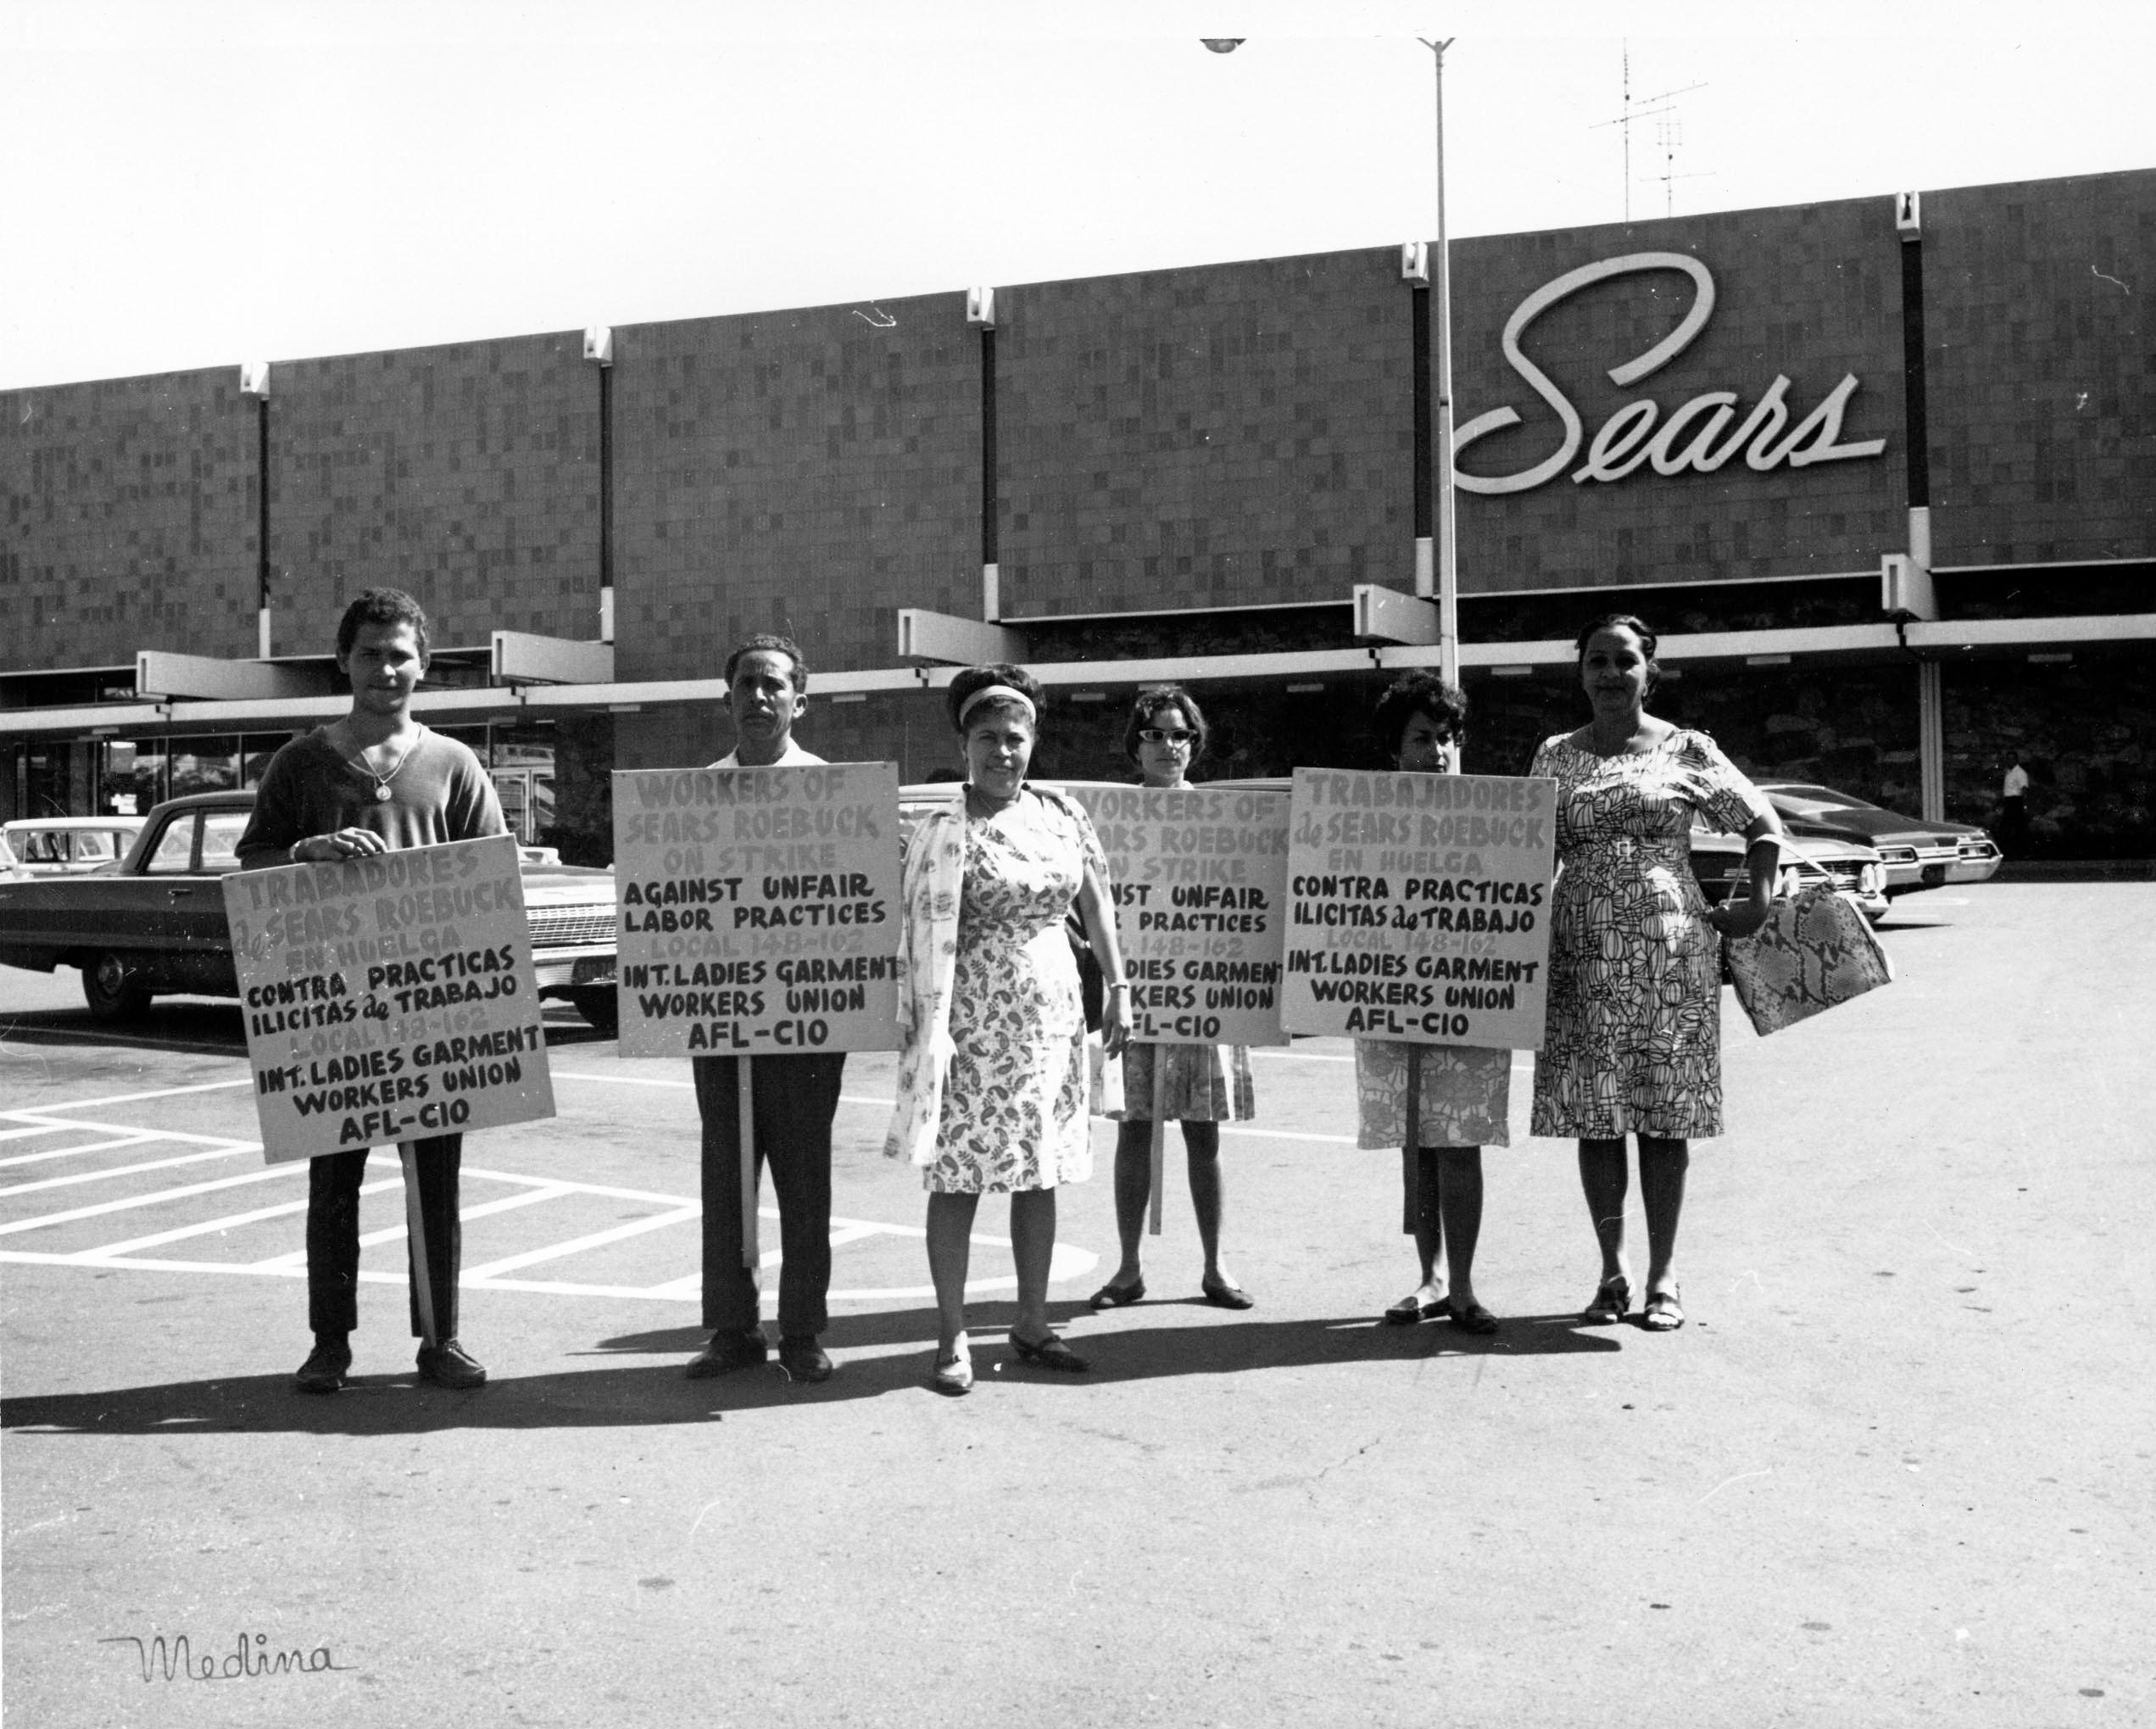 Streikposten der International Ladies' Garment Workers' Union (ILGWU) geben auf Englisch und Spanisch ihren Streik gegen Sears Roebuck bekannt, Februar 1965.